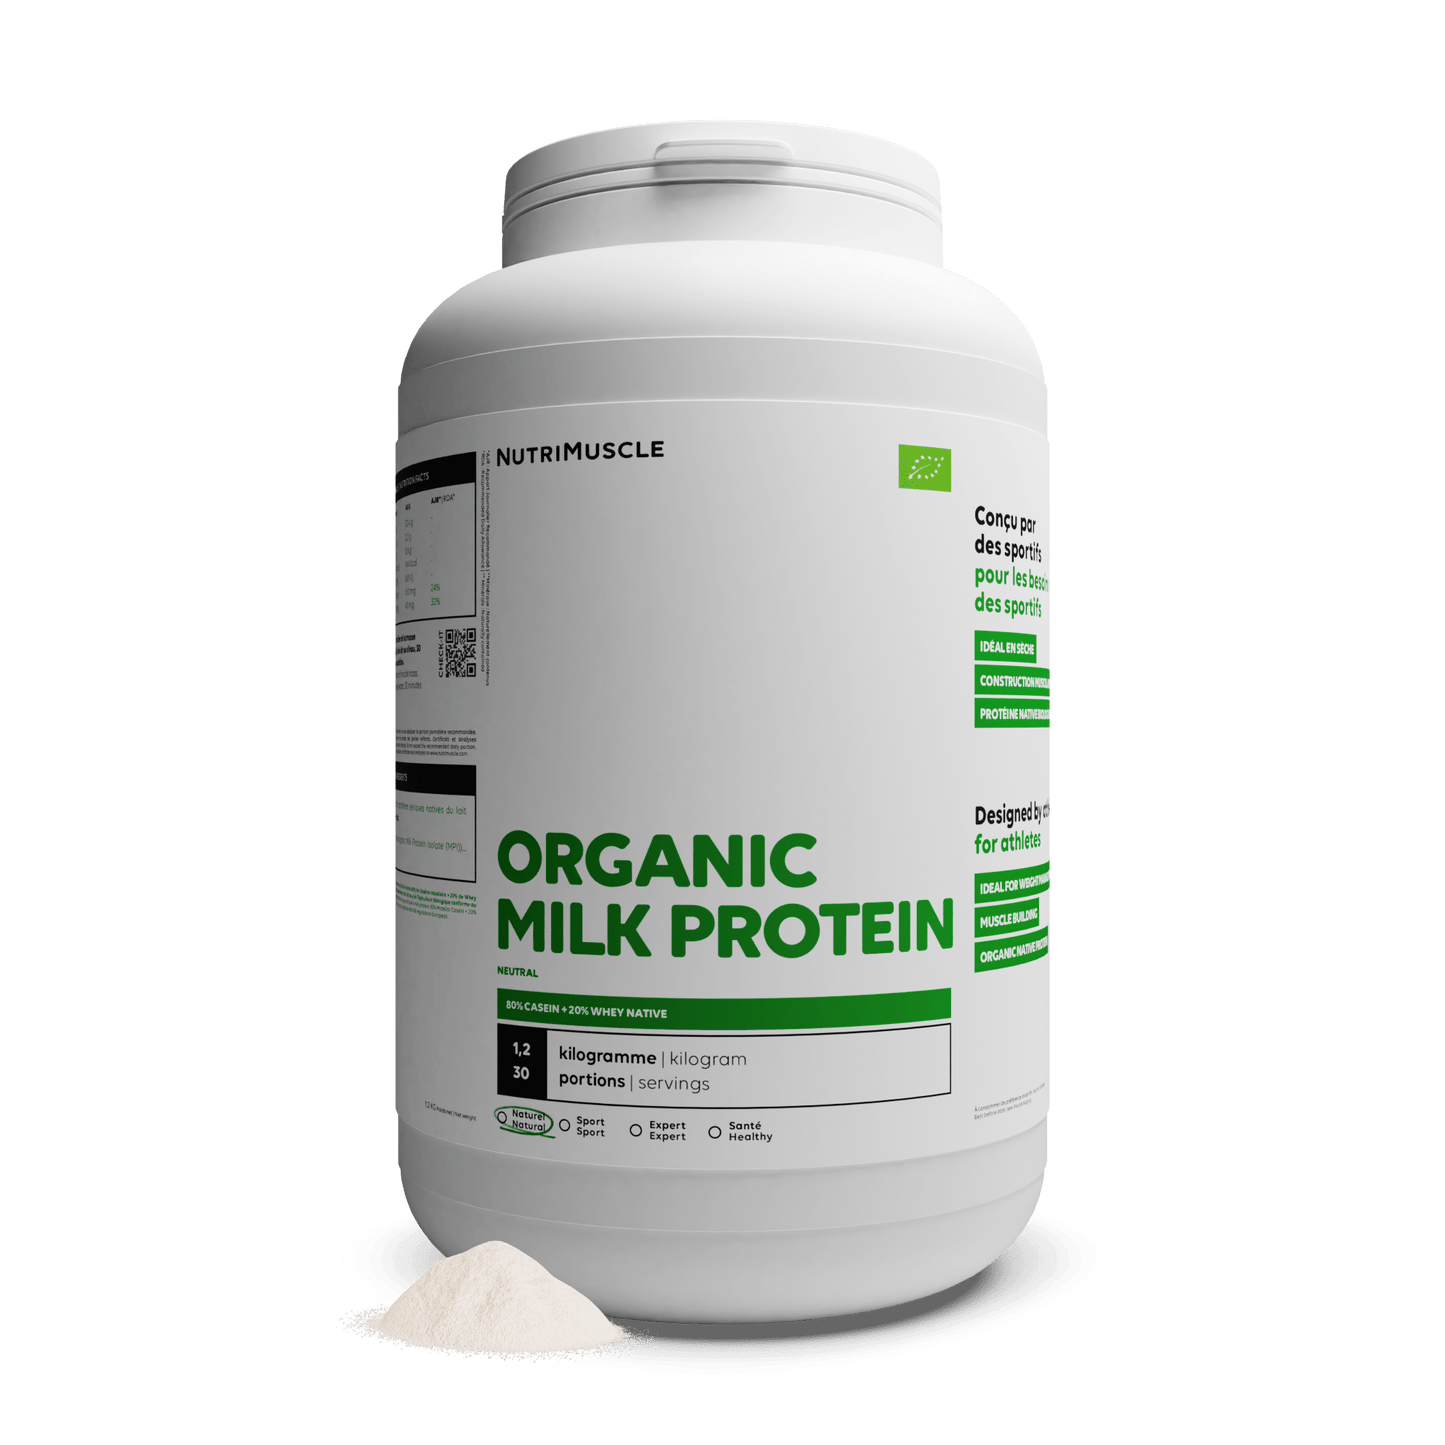 Nutrimuscle Protéines 1.20 kg Protéines Totales Biologiques